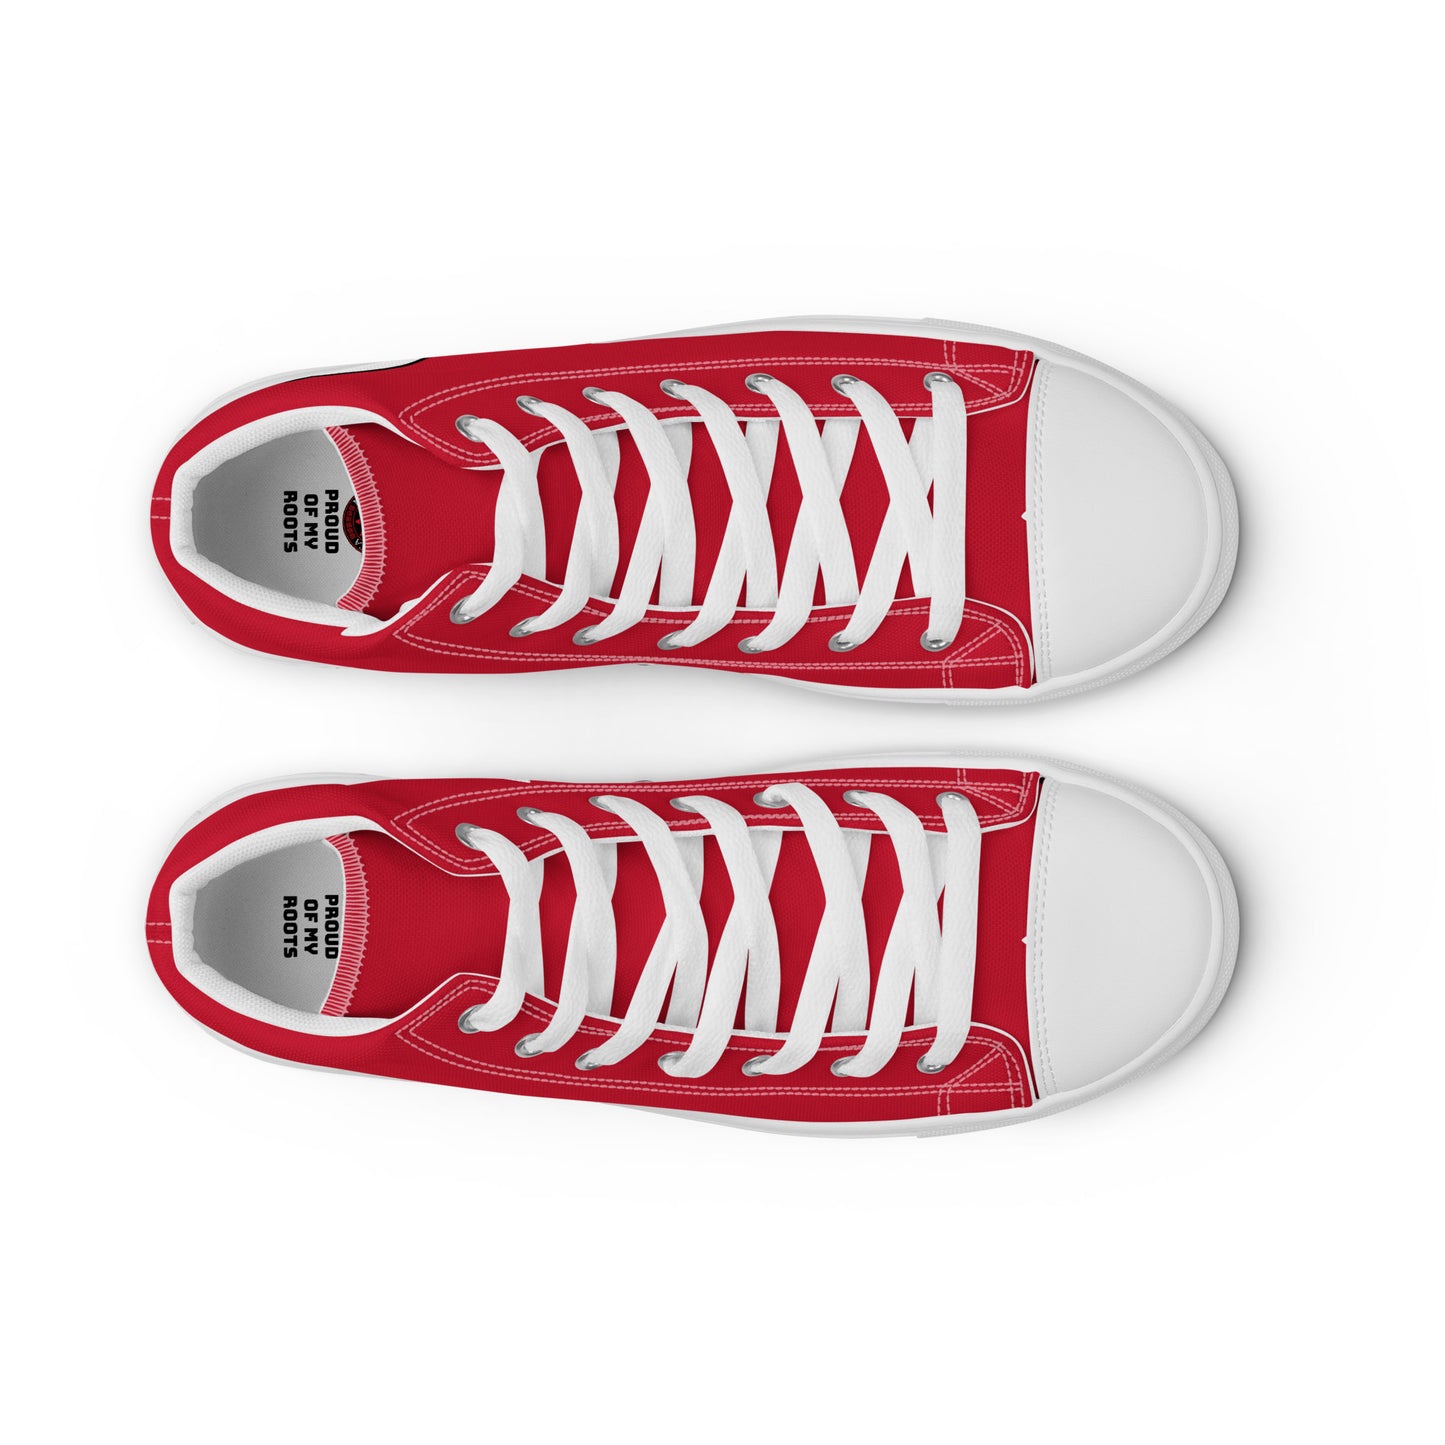 Paraguay - Hombre - Rojo - Zapatos High top